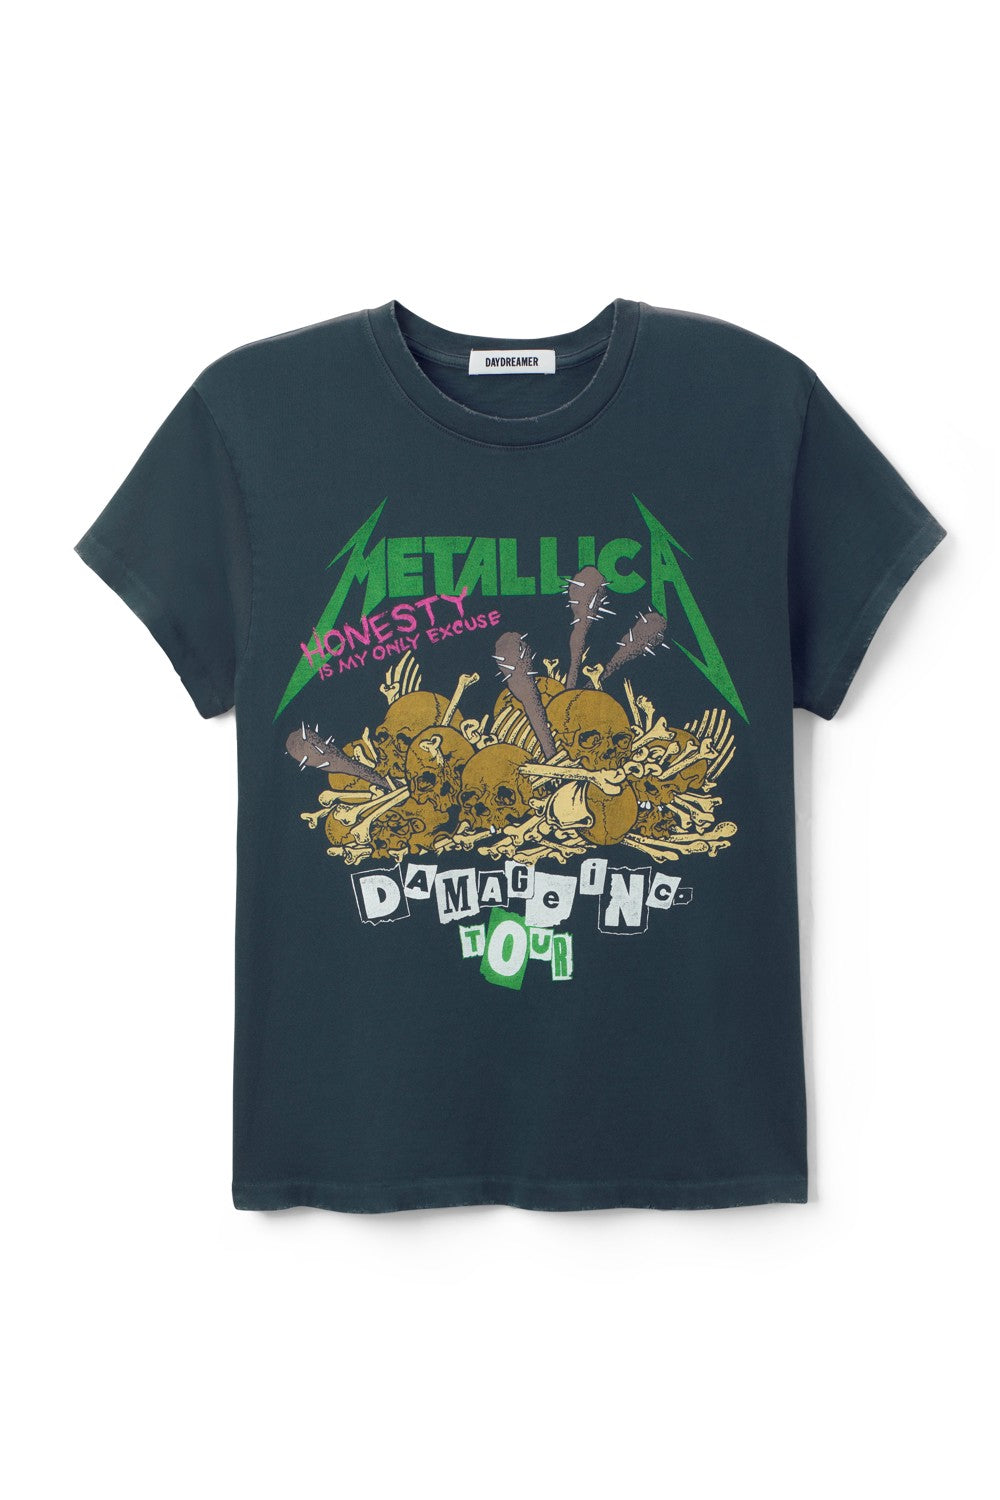 Metallica Damage Inc Tour Tee